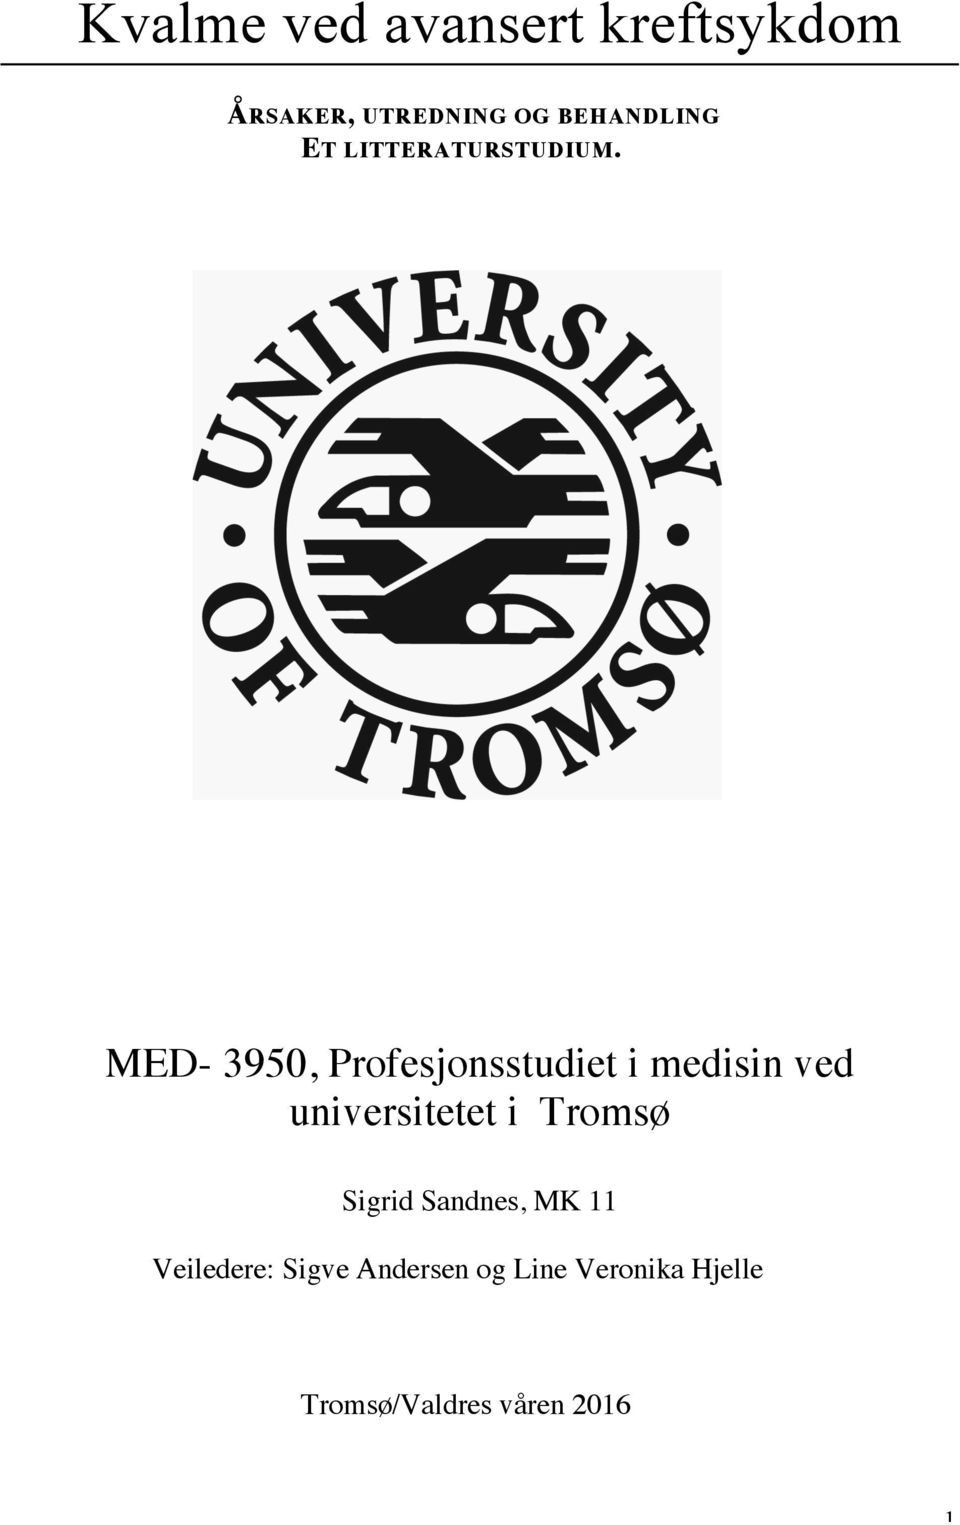 MED- 3950, Profesjonsstudiet i medisin ved universitetet i